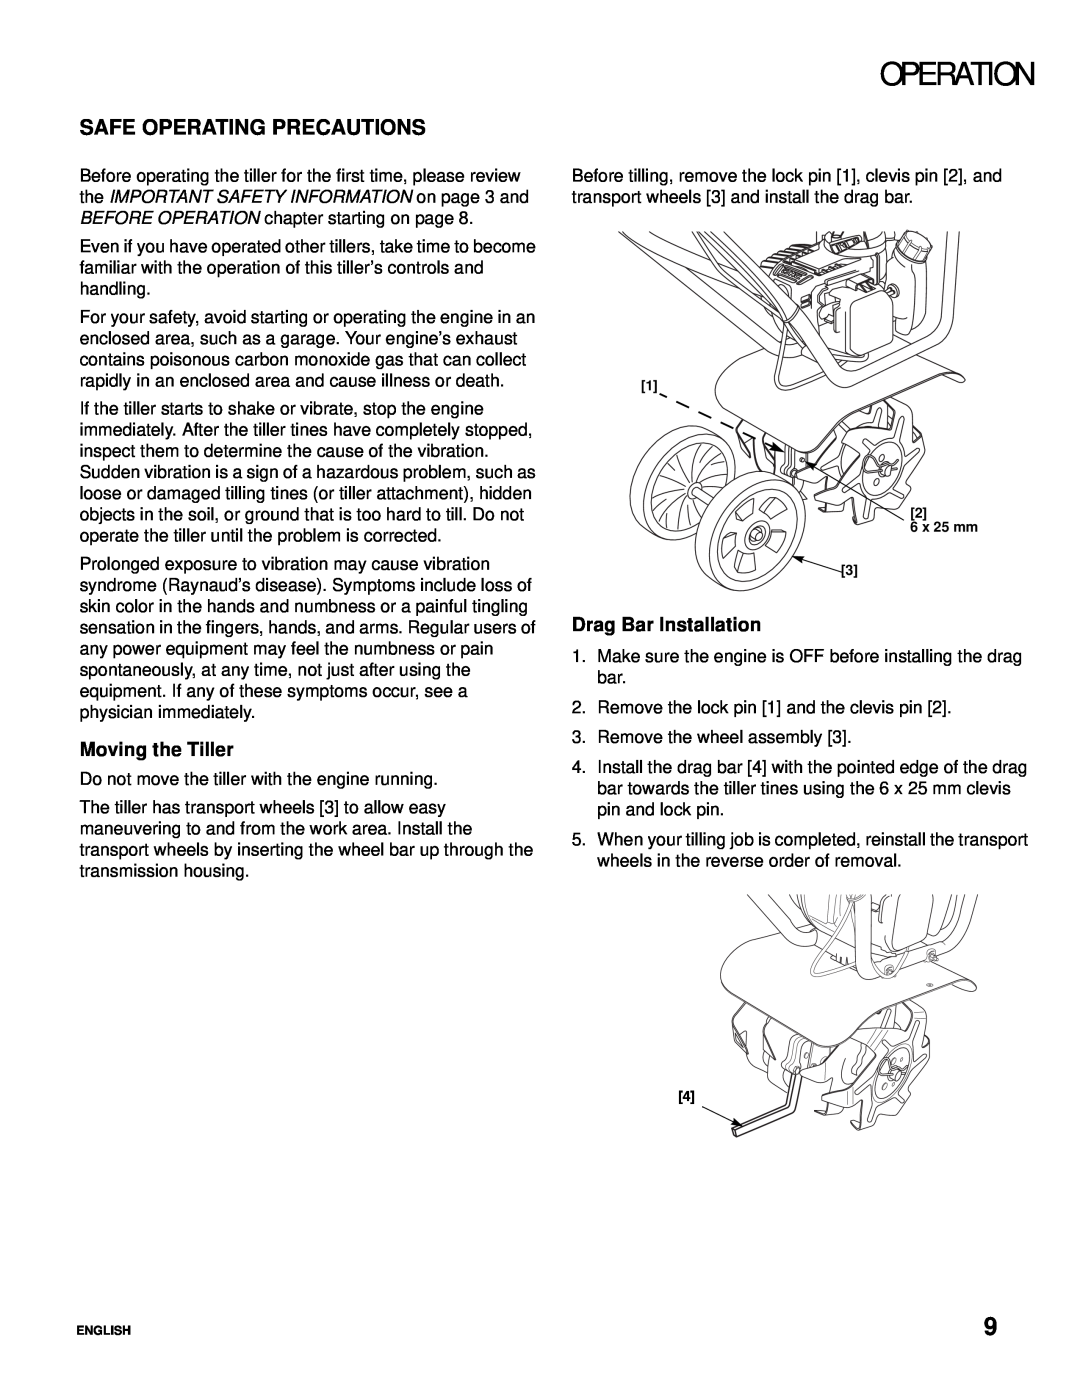 Honda Power Equipment Honda Mini-Tiller Safe Operating Precautions, Moving the Tiller, Drag Bar Installation, Operation 